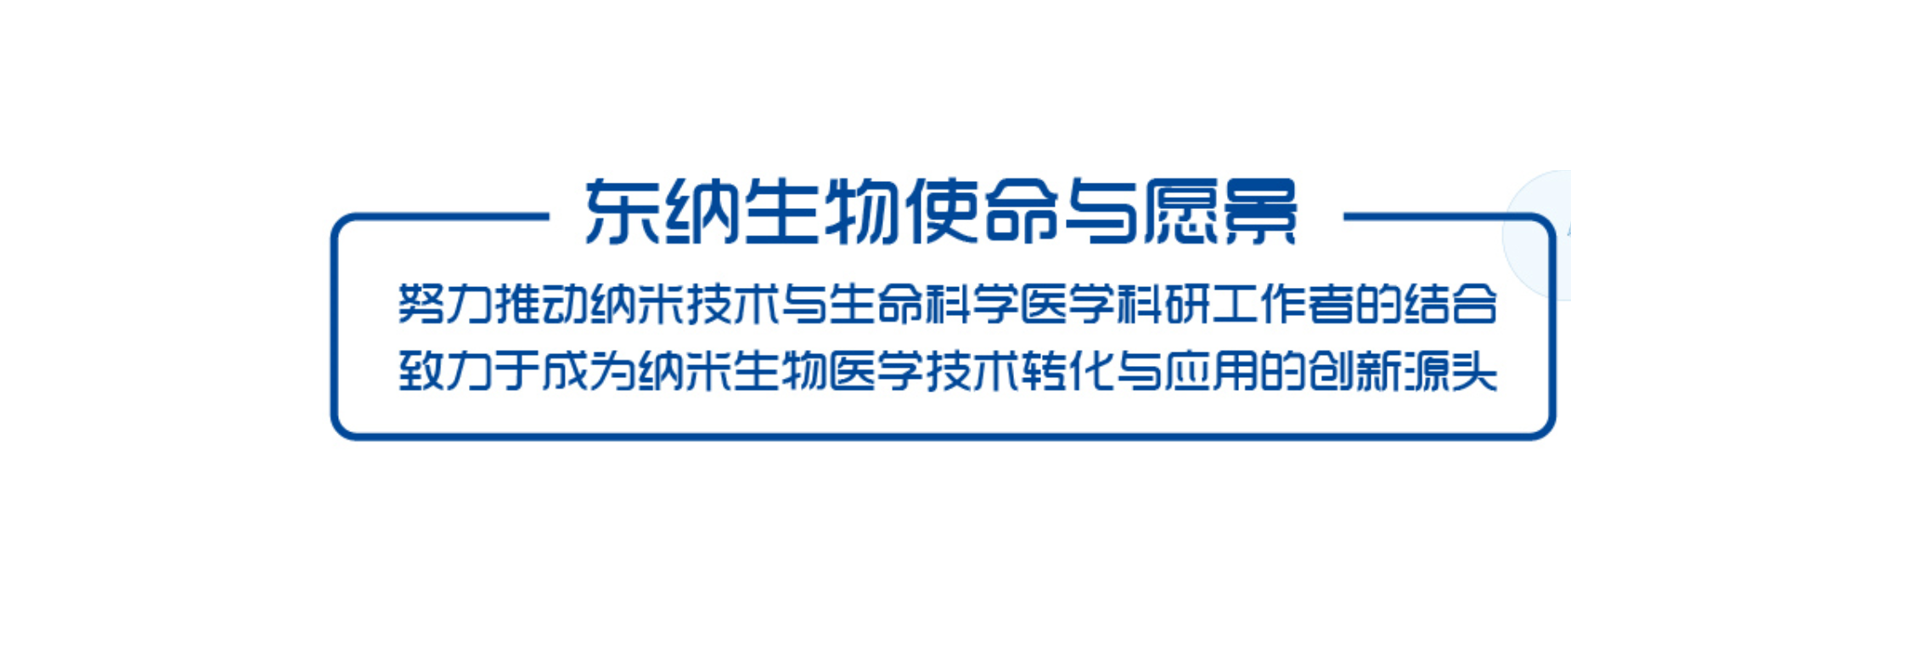 徐州市国家高新区考察团莅临东纳生物商谈战略合作